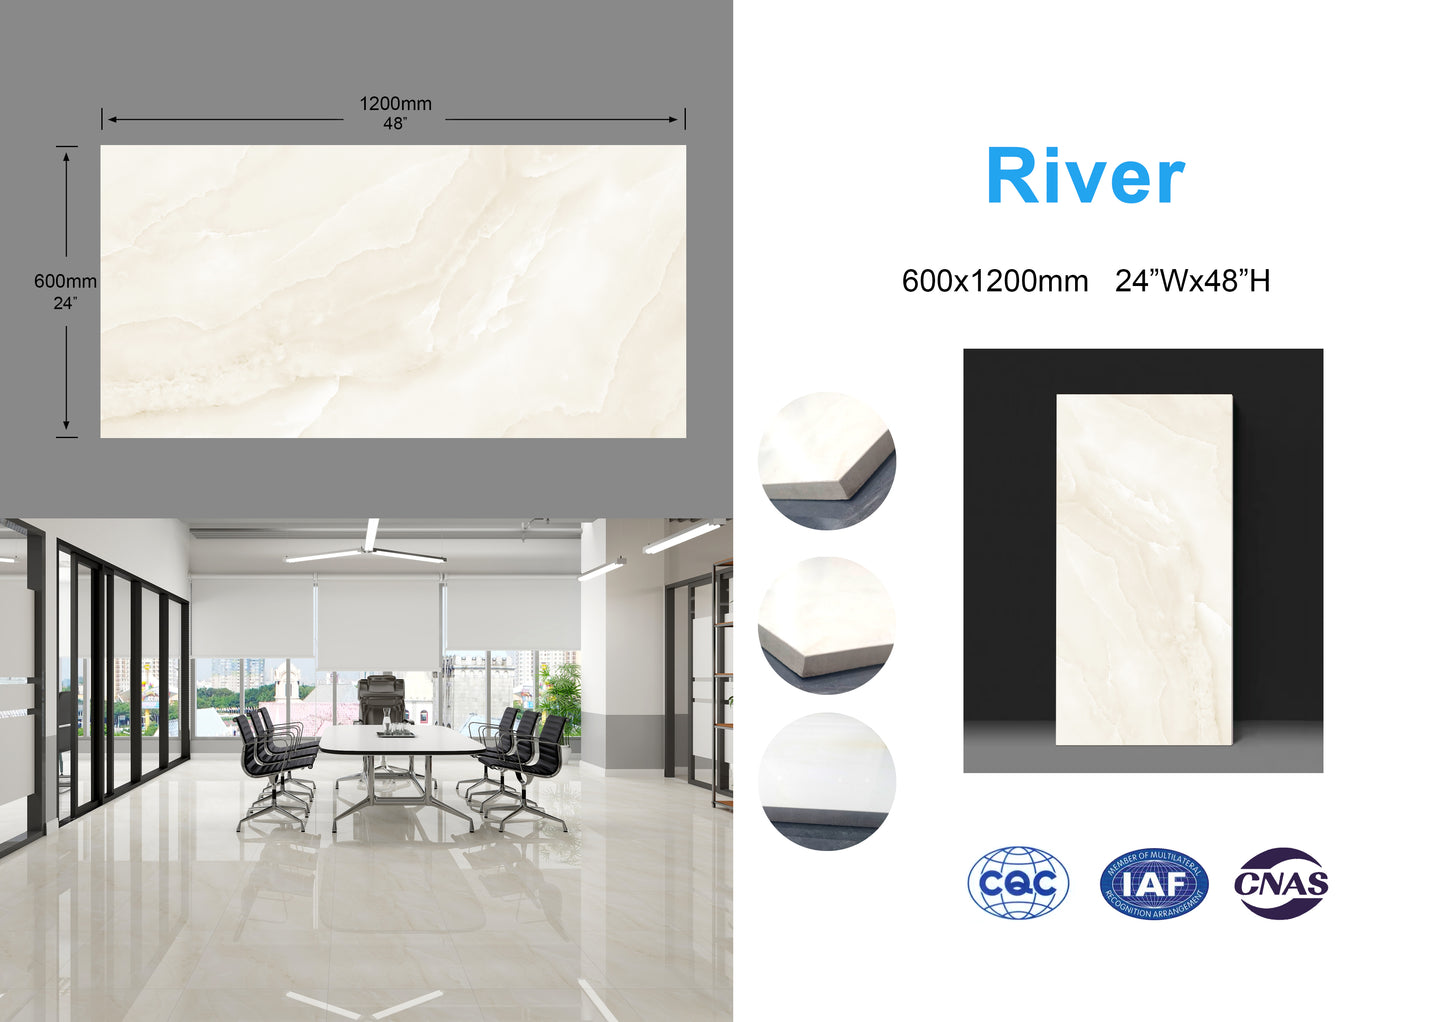 River family Full Polished Glazed Tile 24"x48" 3pcs/box 24sf/box $1.79/sf